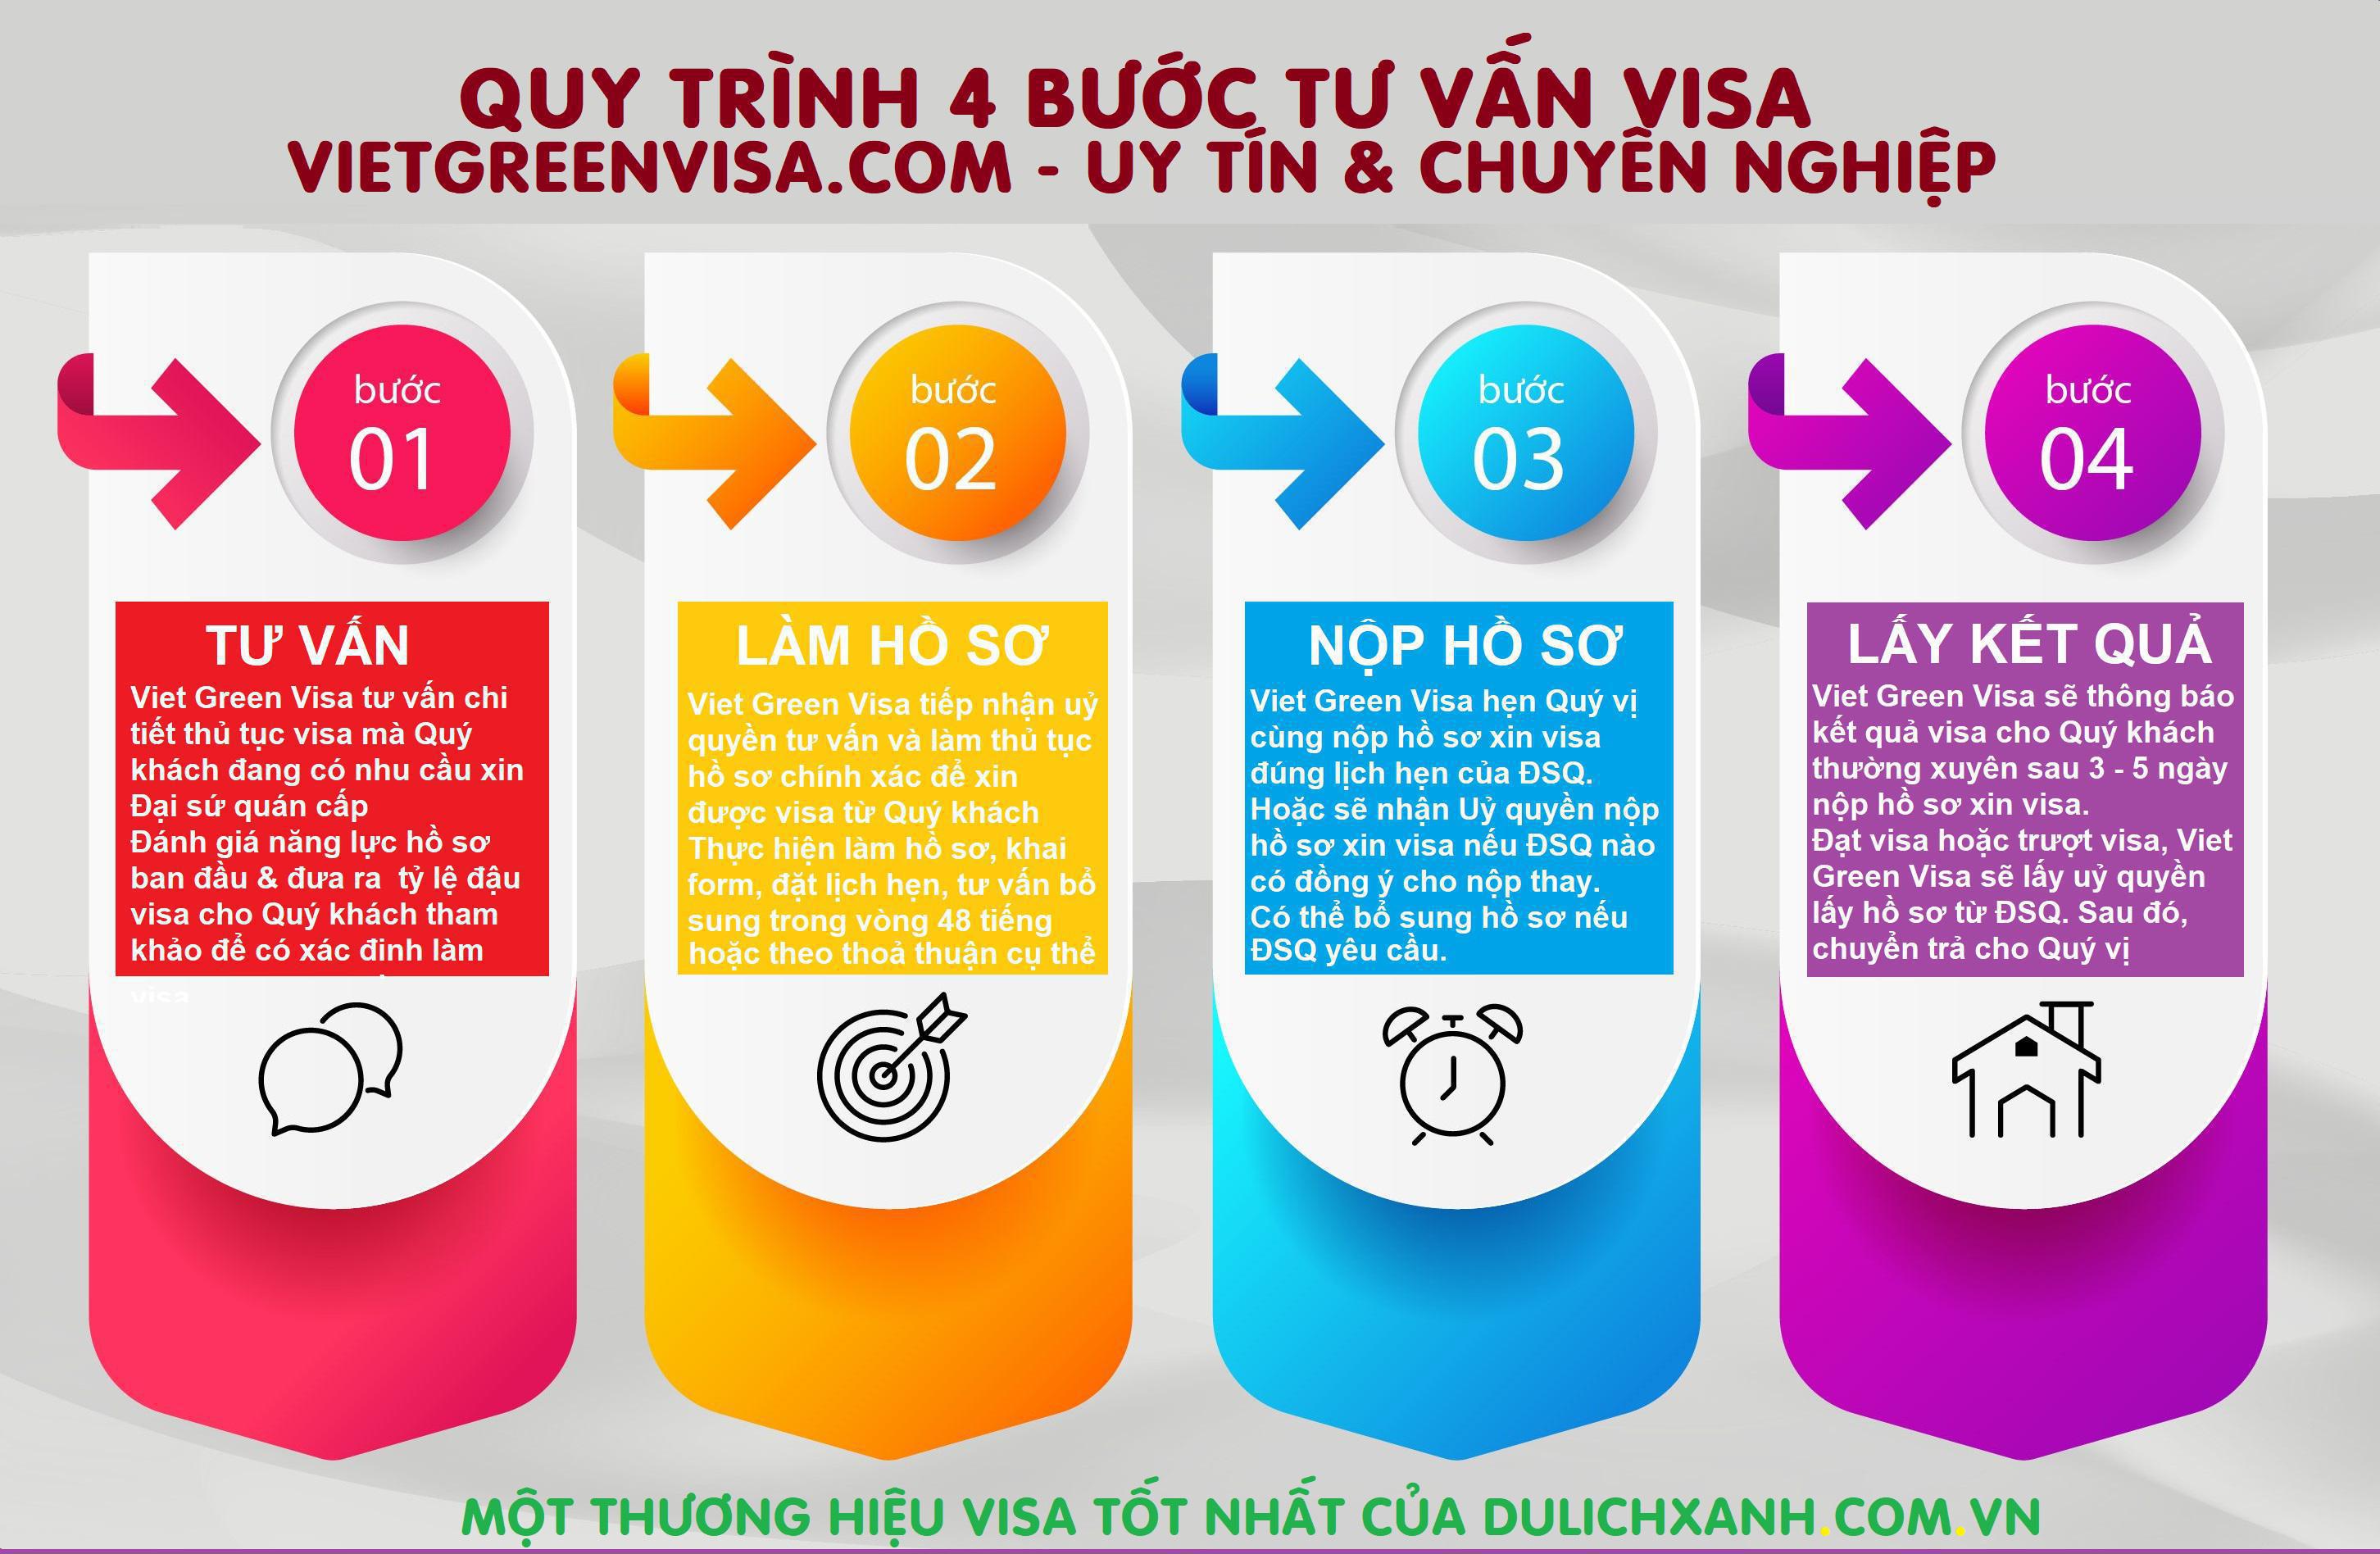 Viet Green Visa, bảng giá xin visa, bảng giá dịch vụ visa